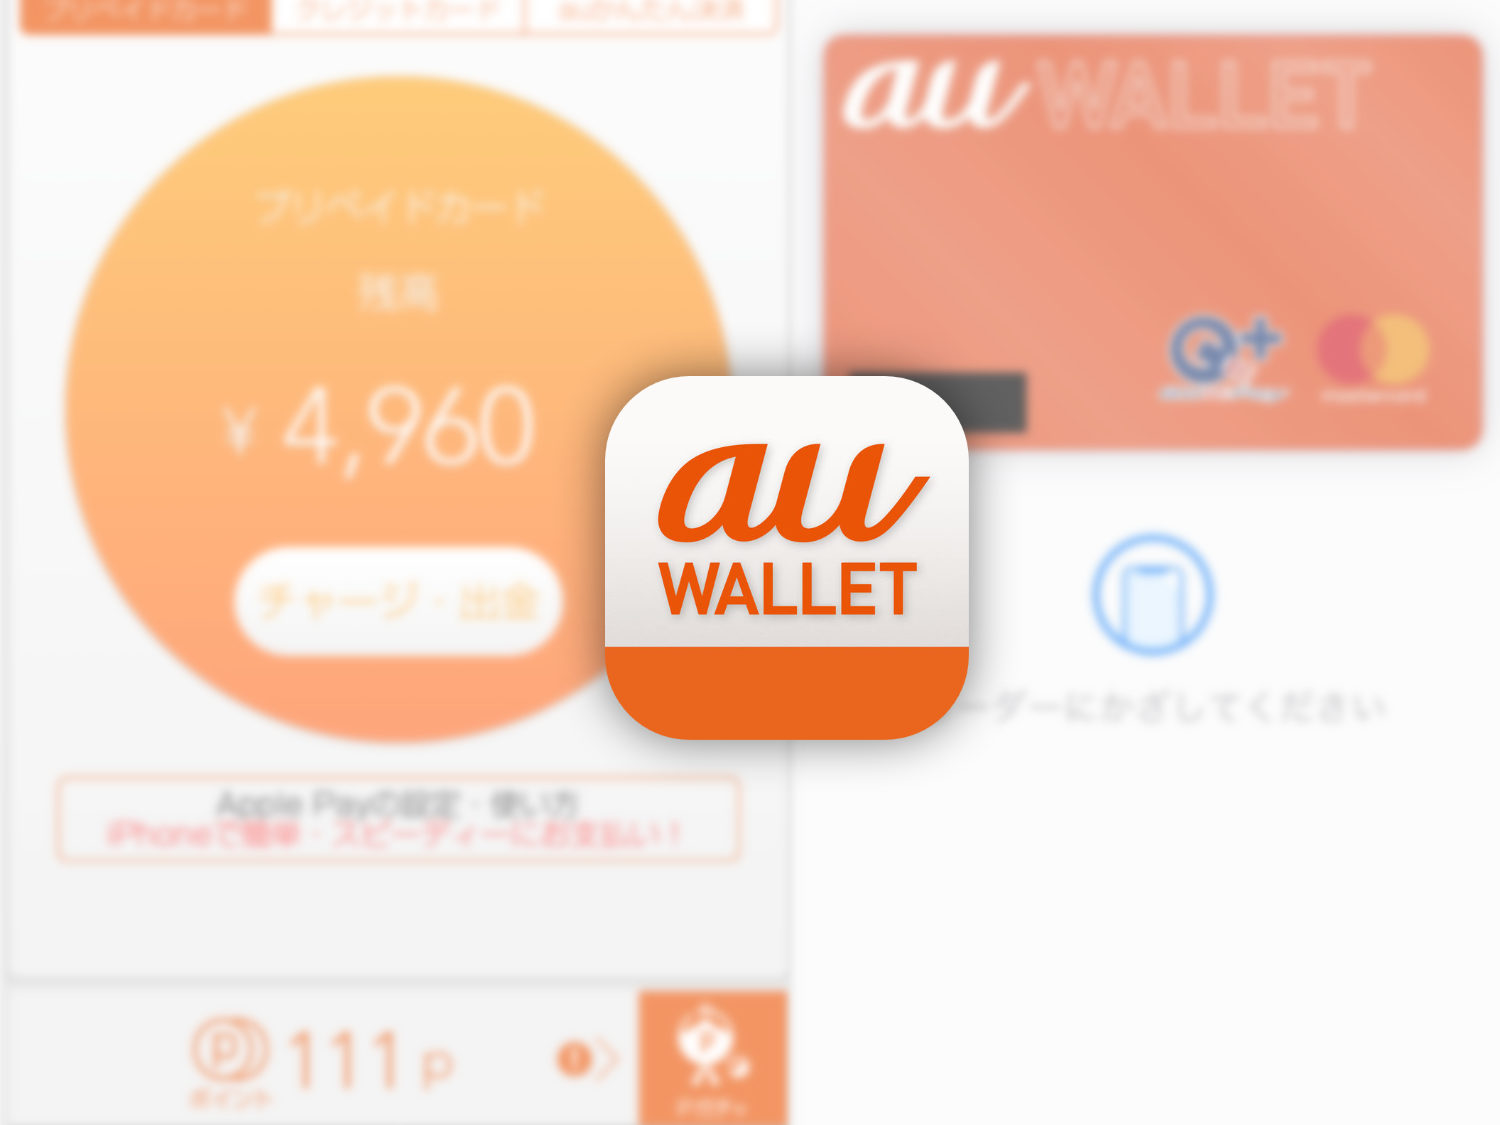 iPhoneで現金を支払うおもしろい仕組み。au WalletカードをApple Payに登録。